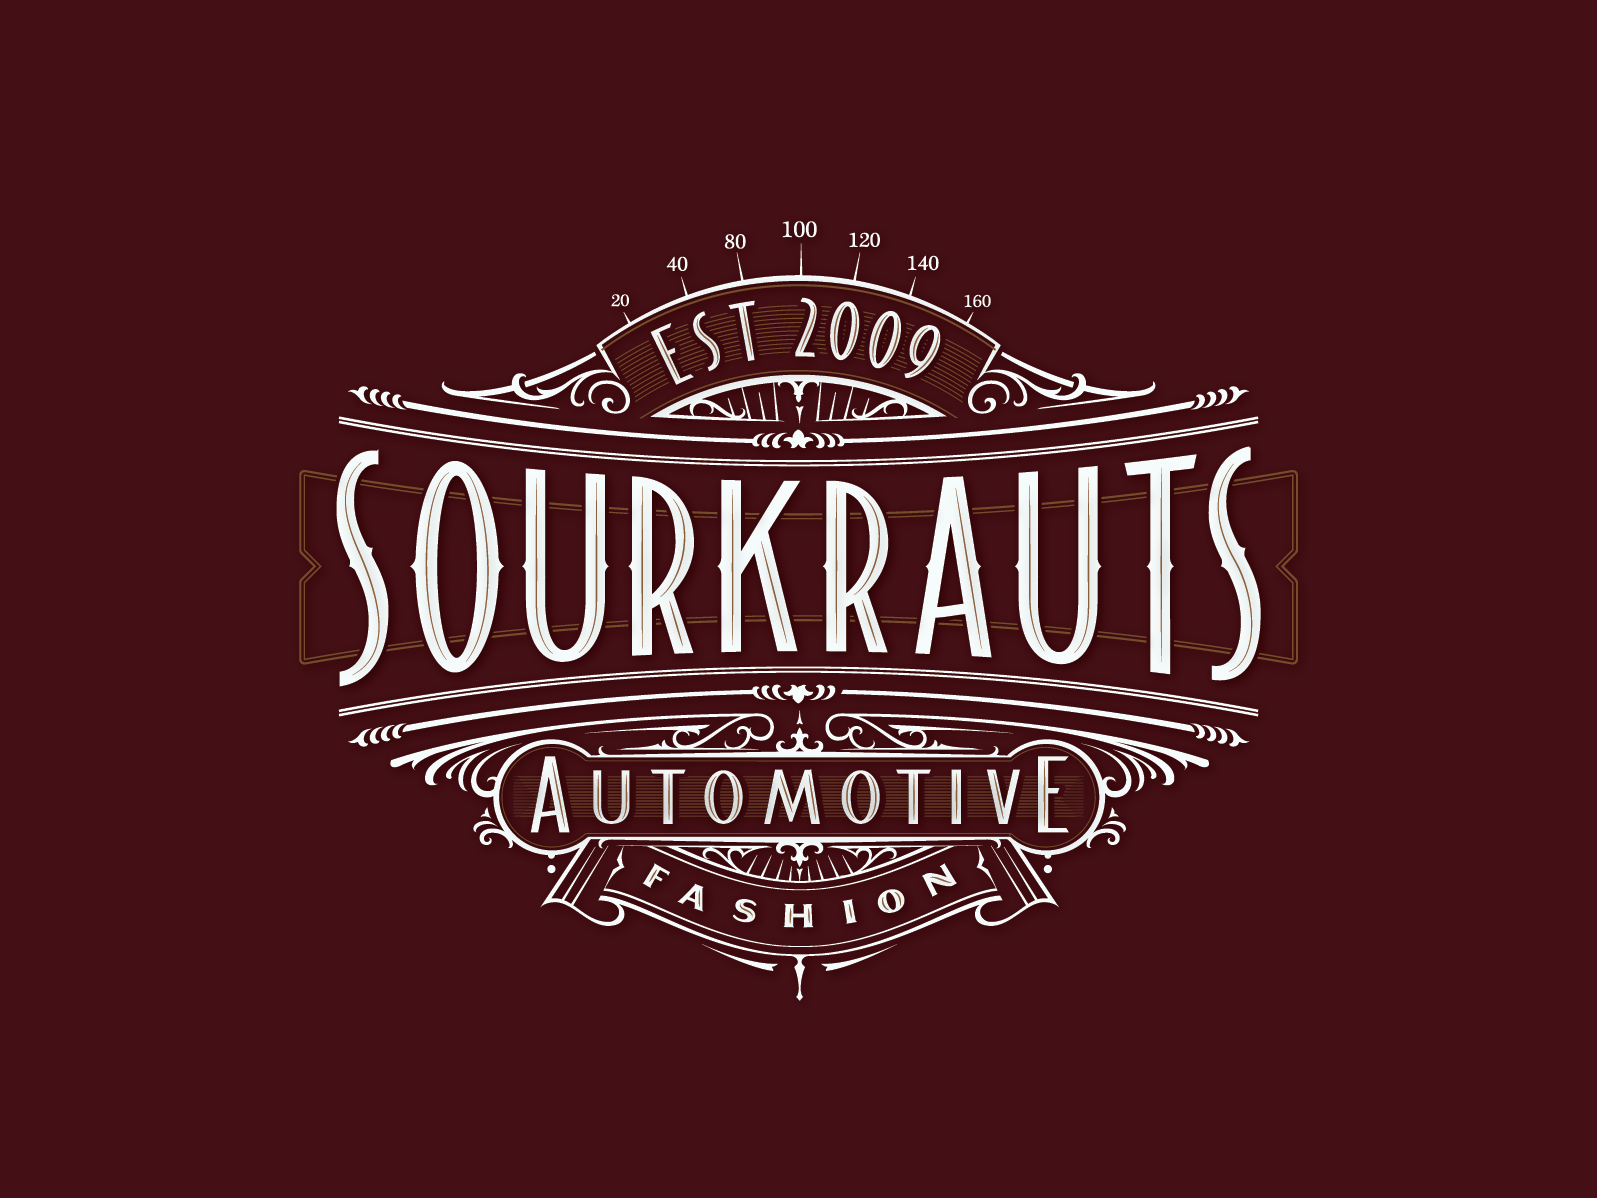 Sourkrauts - Sourkrauts added a new photo.